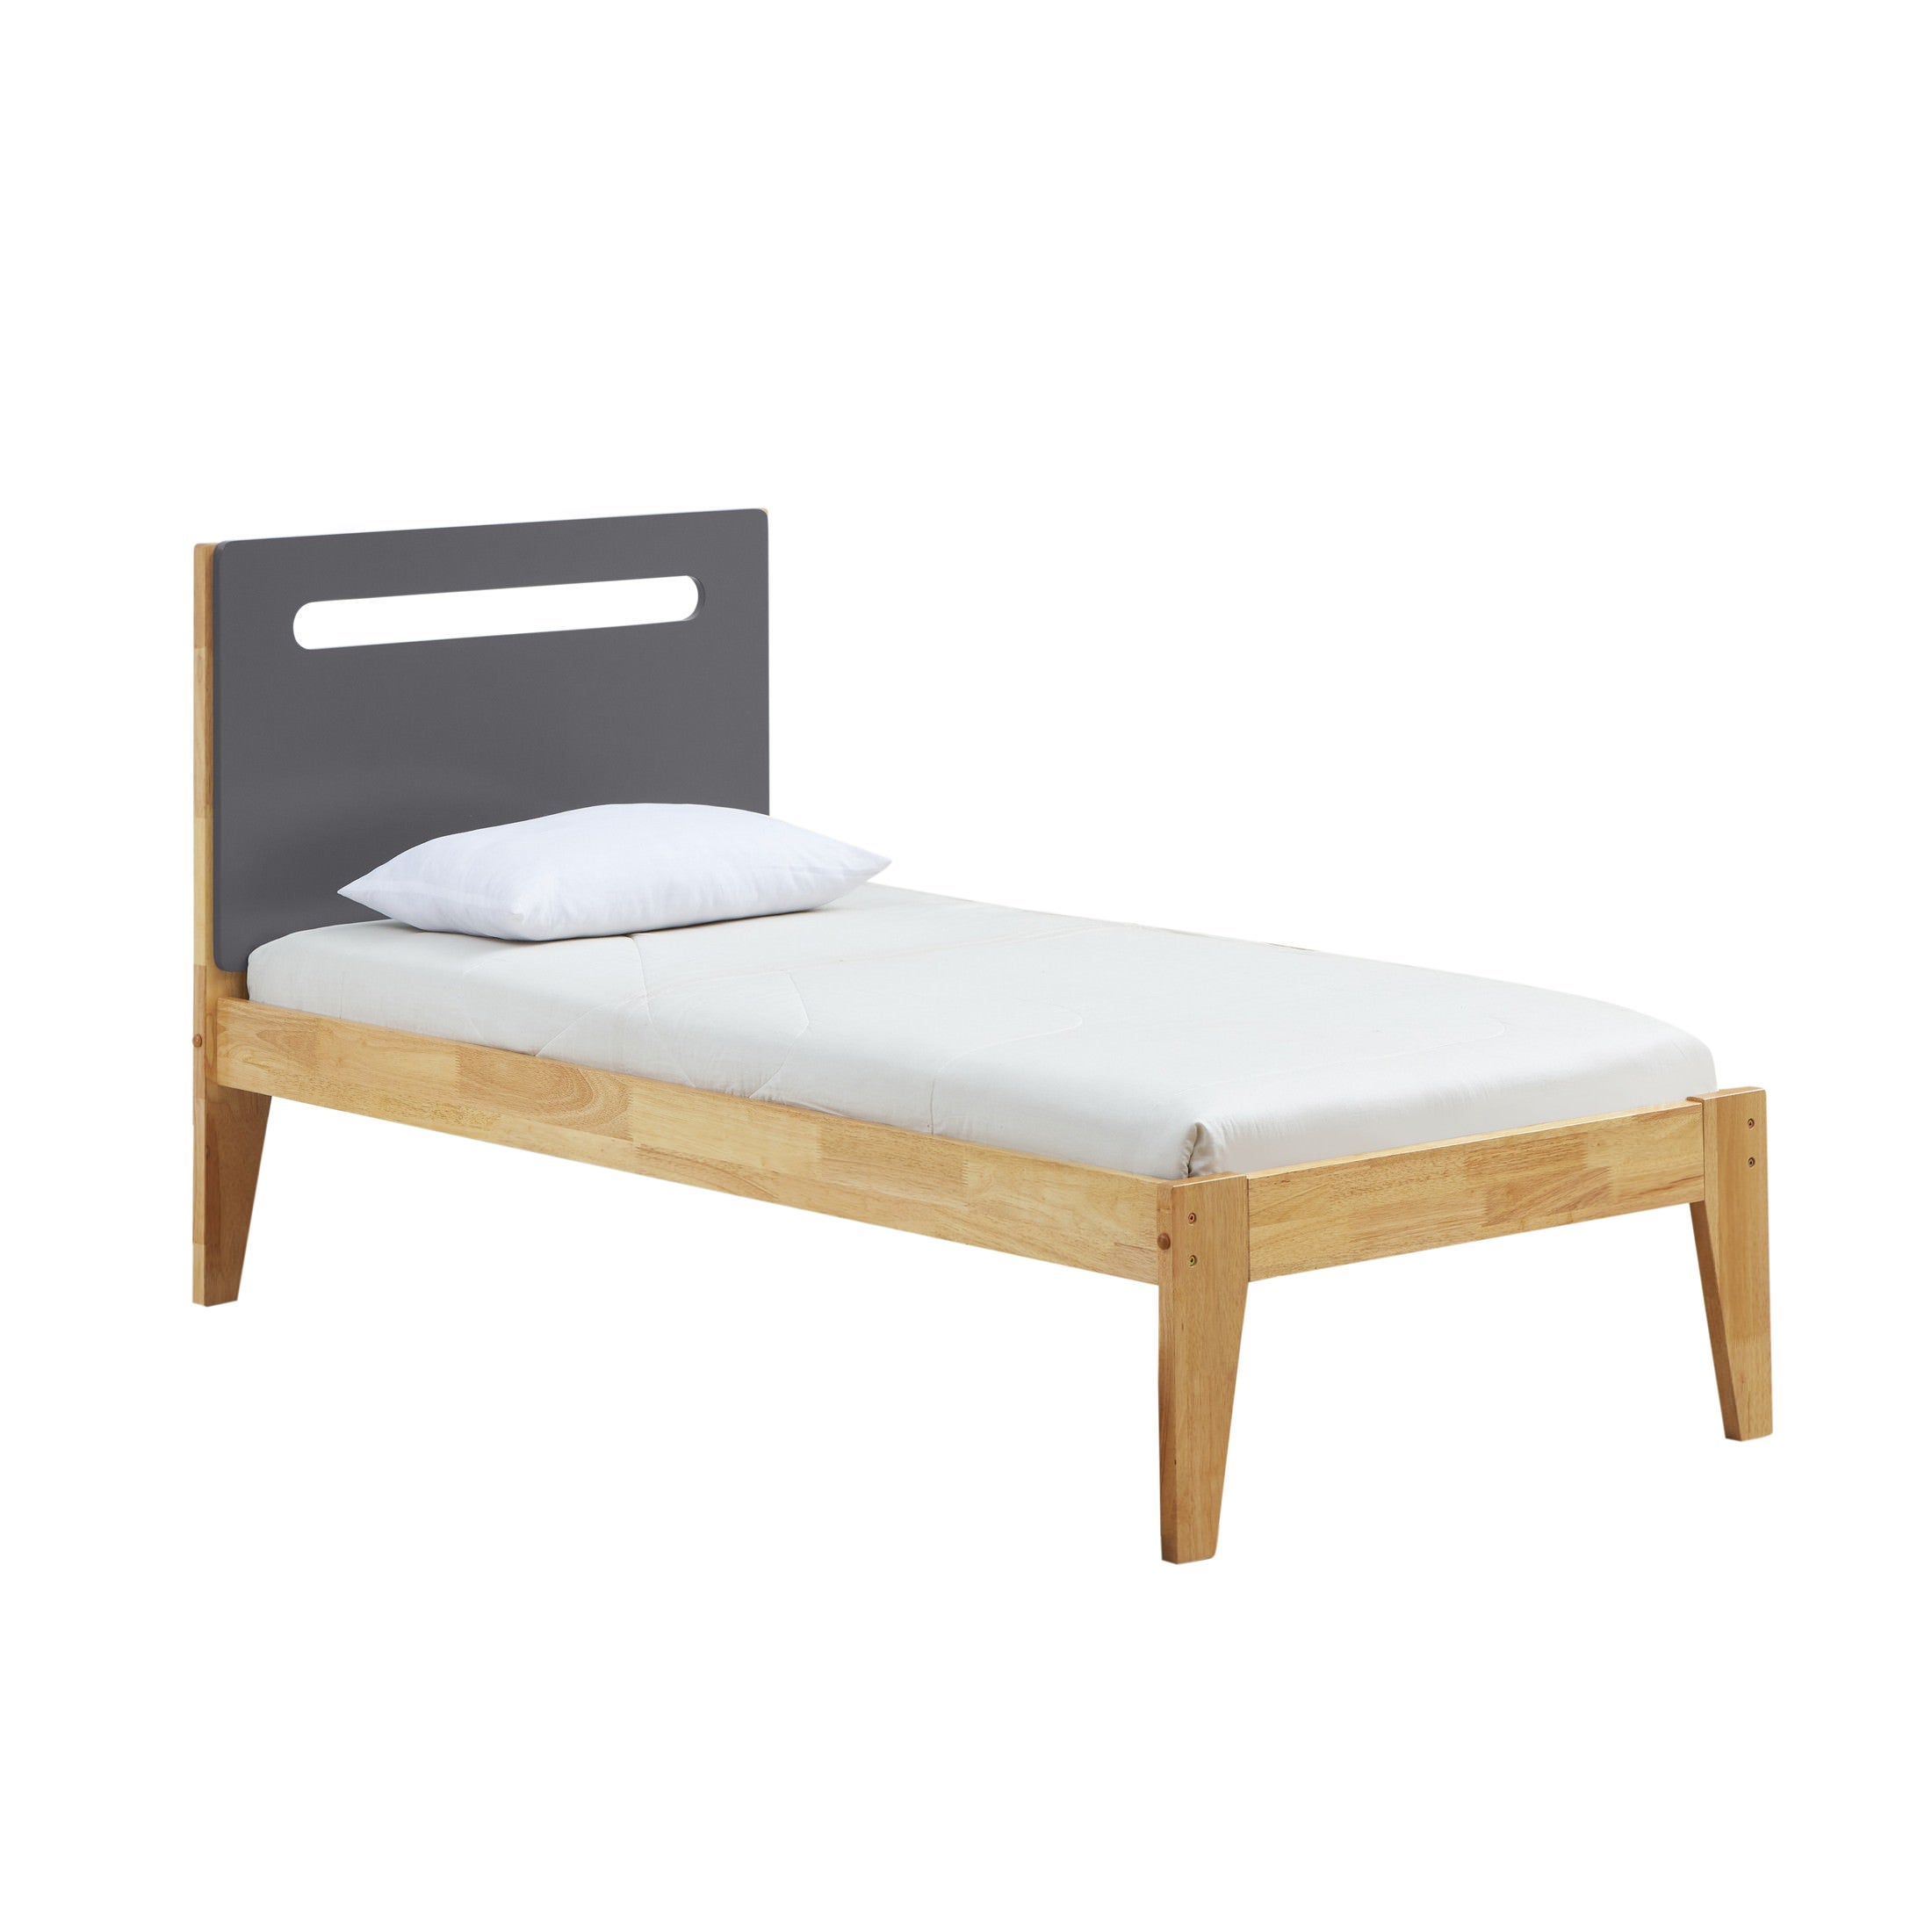 Casla Wooden Bed, Single